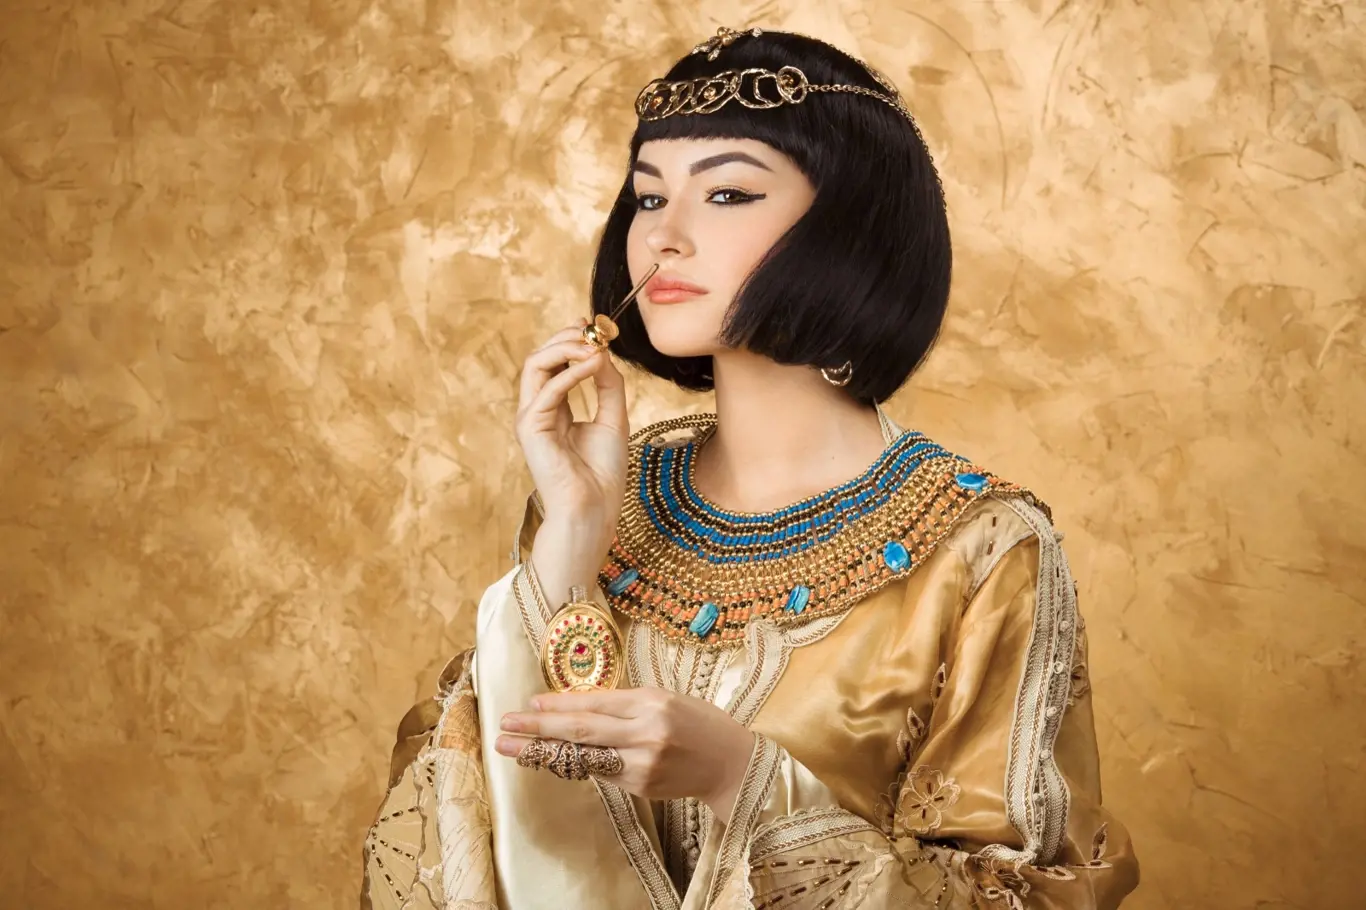 Bylo kouzlo Kleopatry i v jejím parfému?